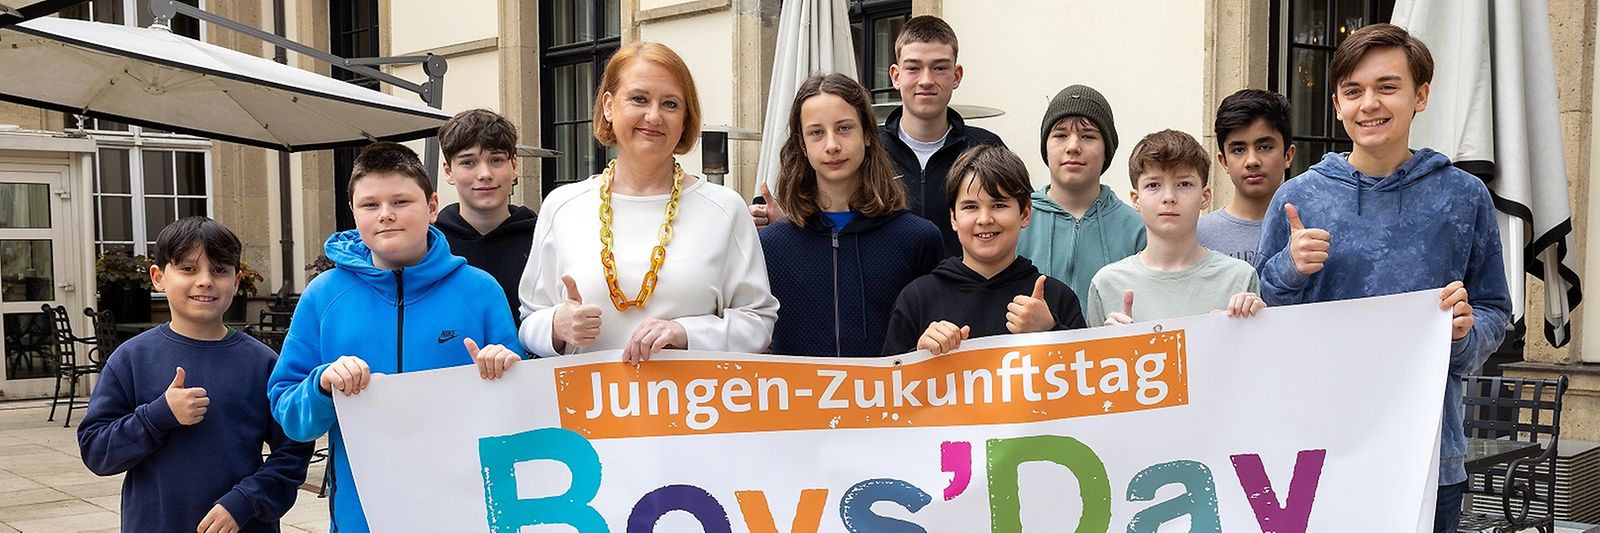 Lisa Paus und eine Gruppe Jugendlicher stehen vor einem Boys-Day-Banner